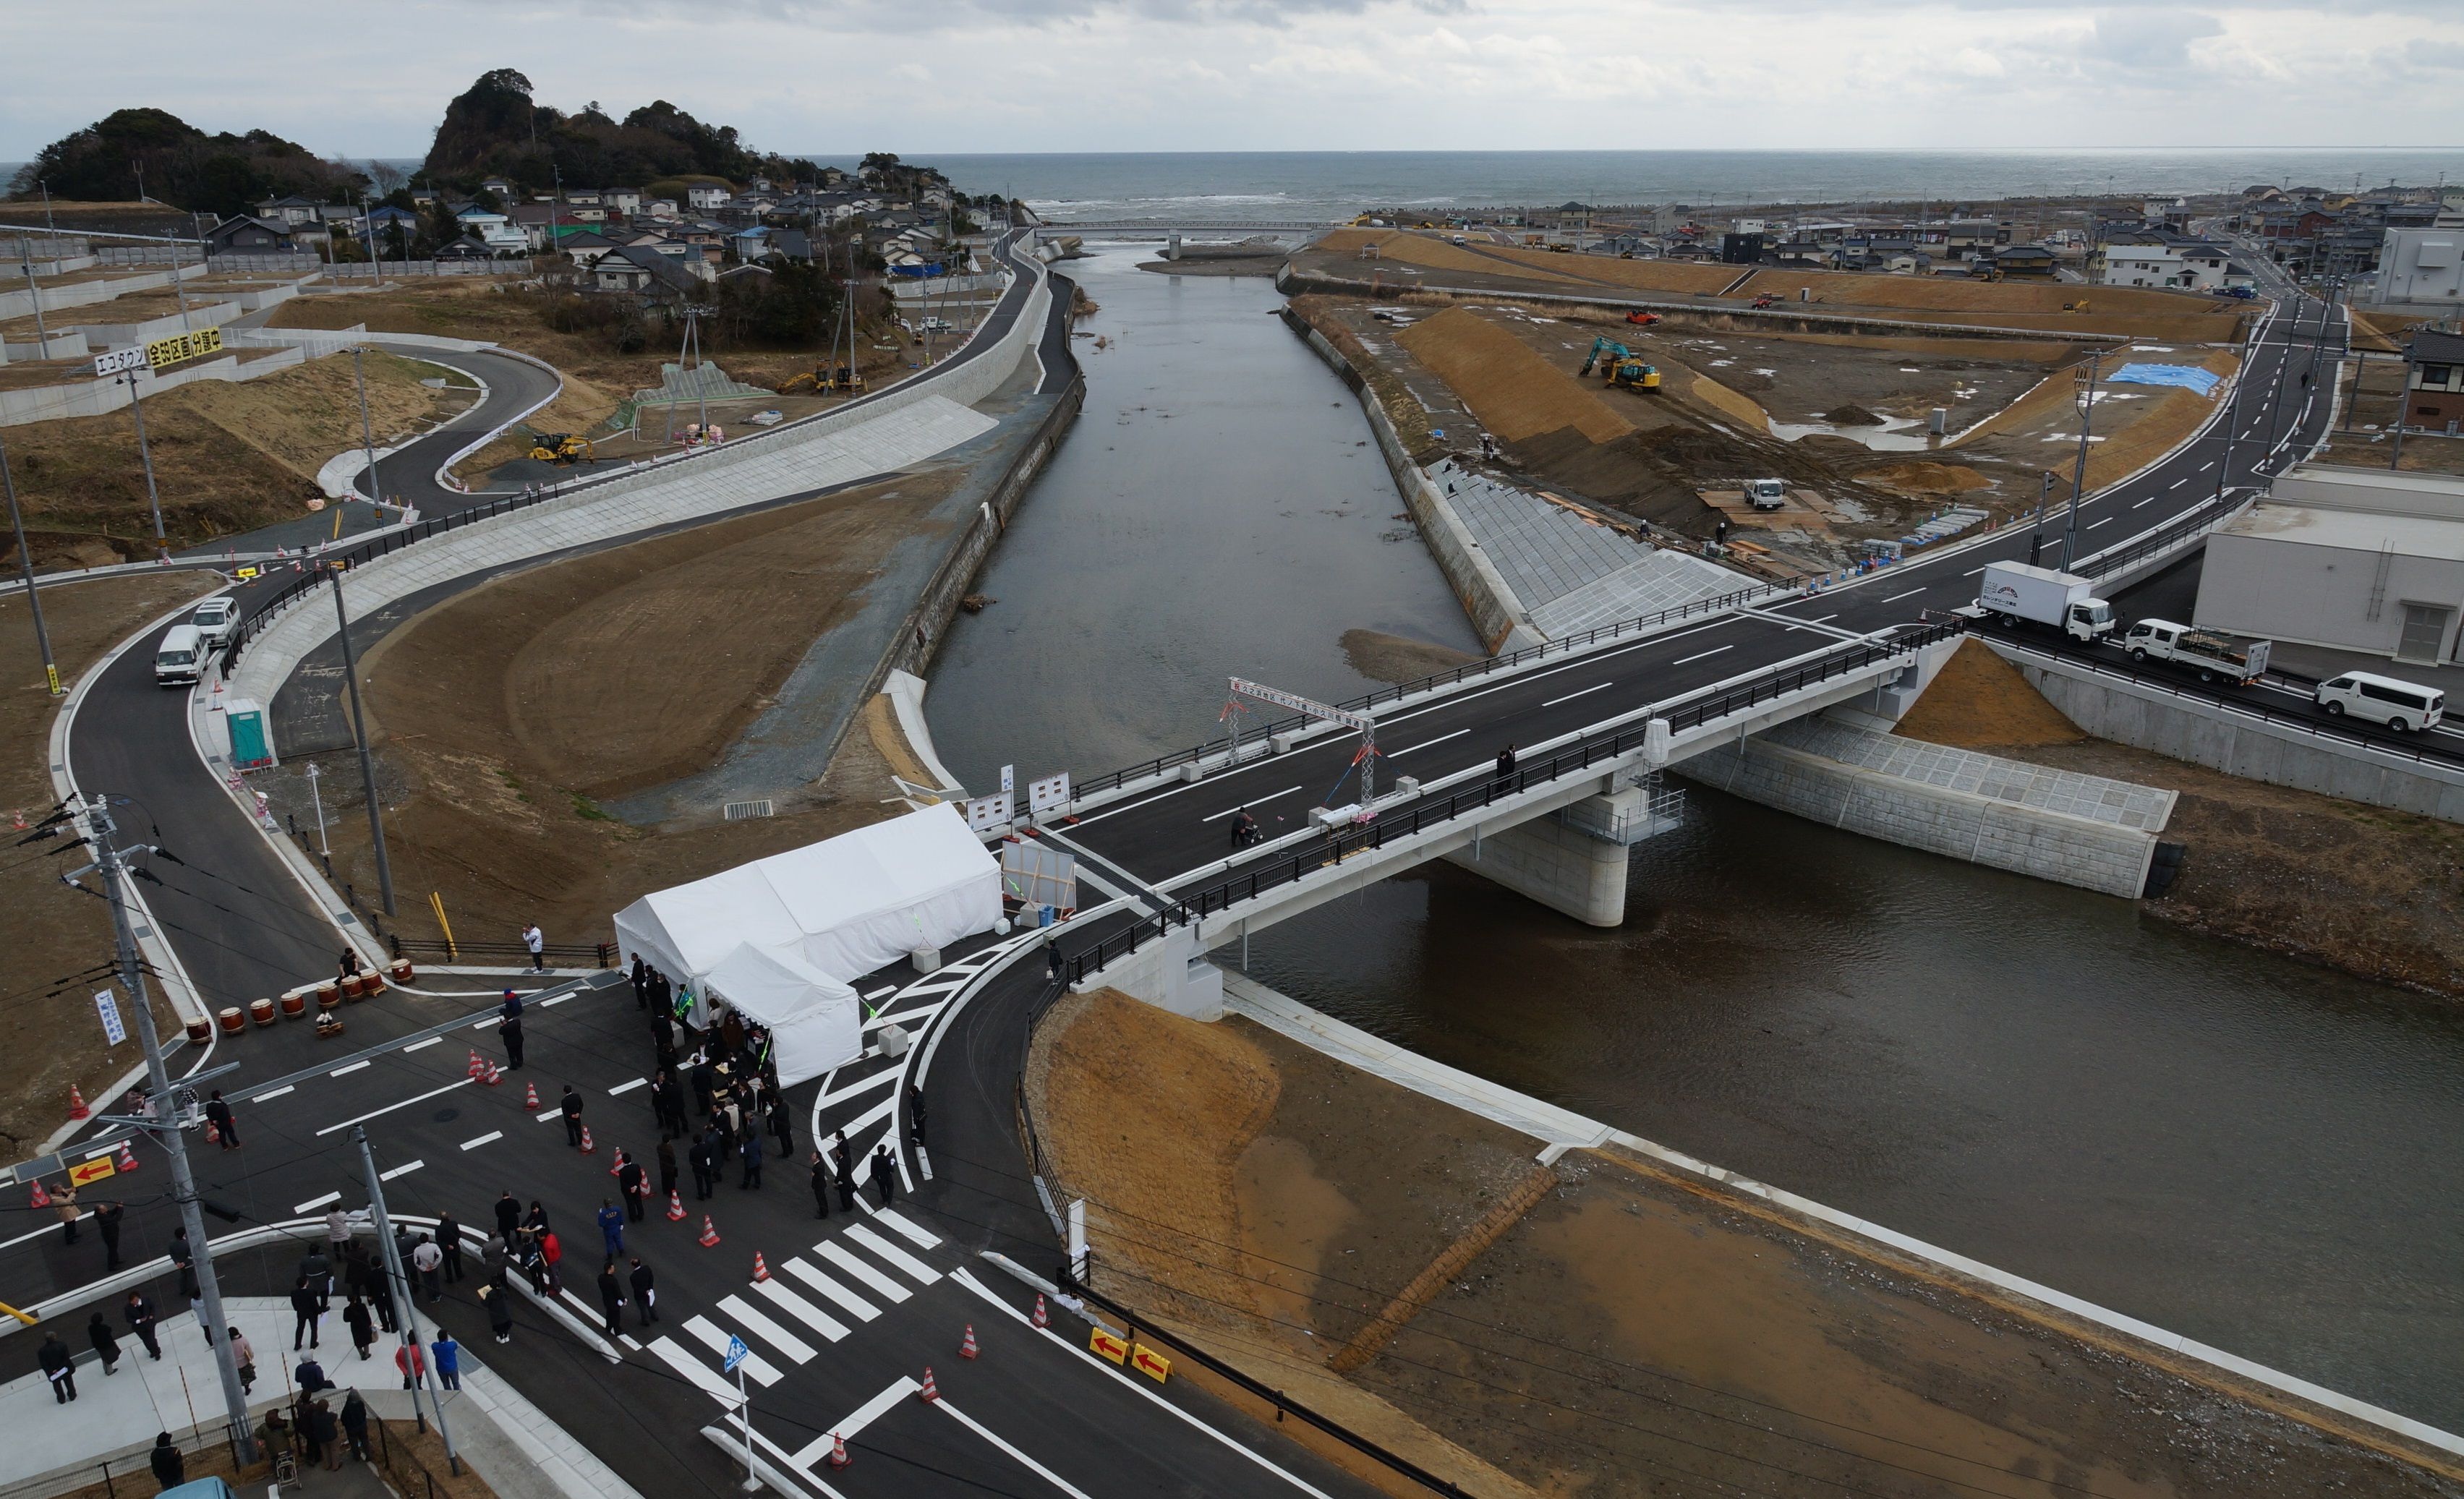 6 久之浜町大久川に架かる代ノ下橋がコンクリート橋として開通(平成30年3月、いわきジャーナル撮影)